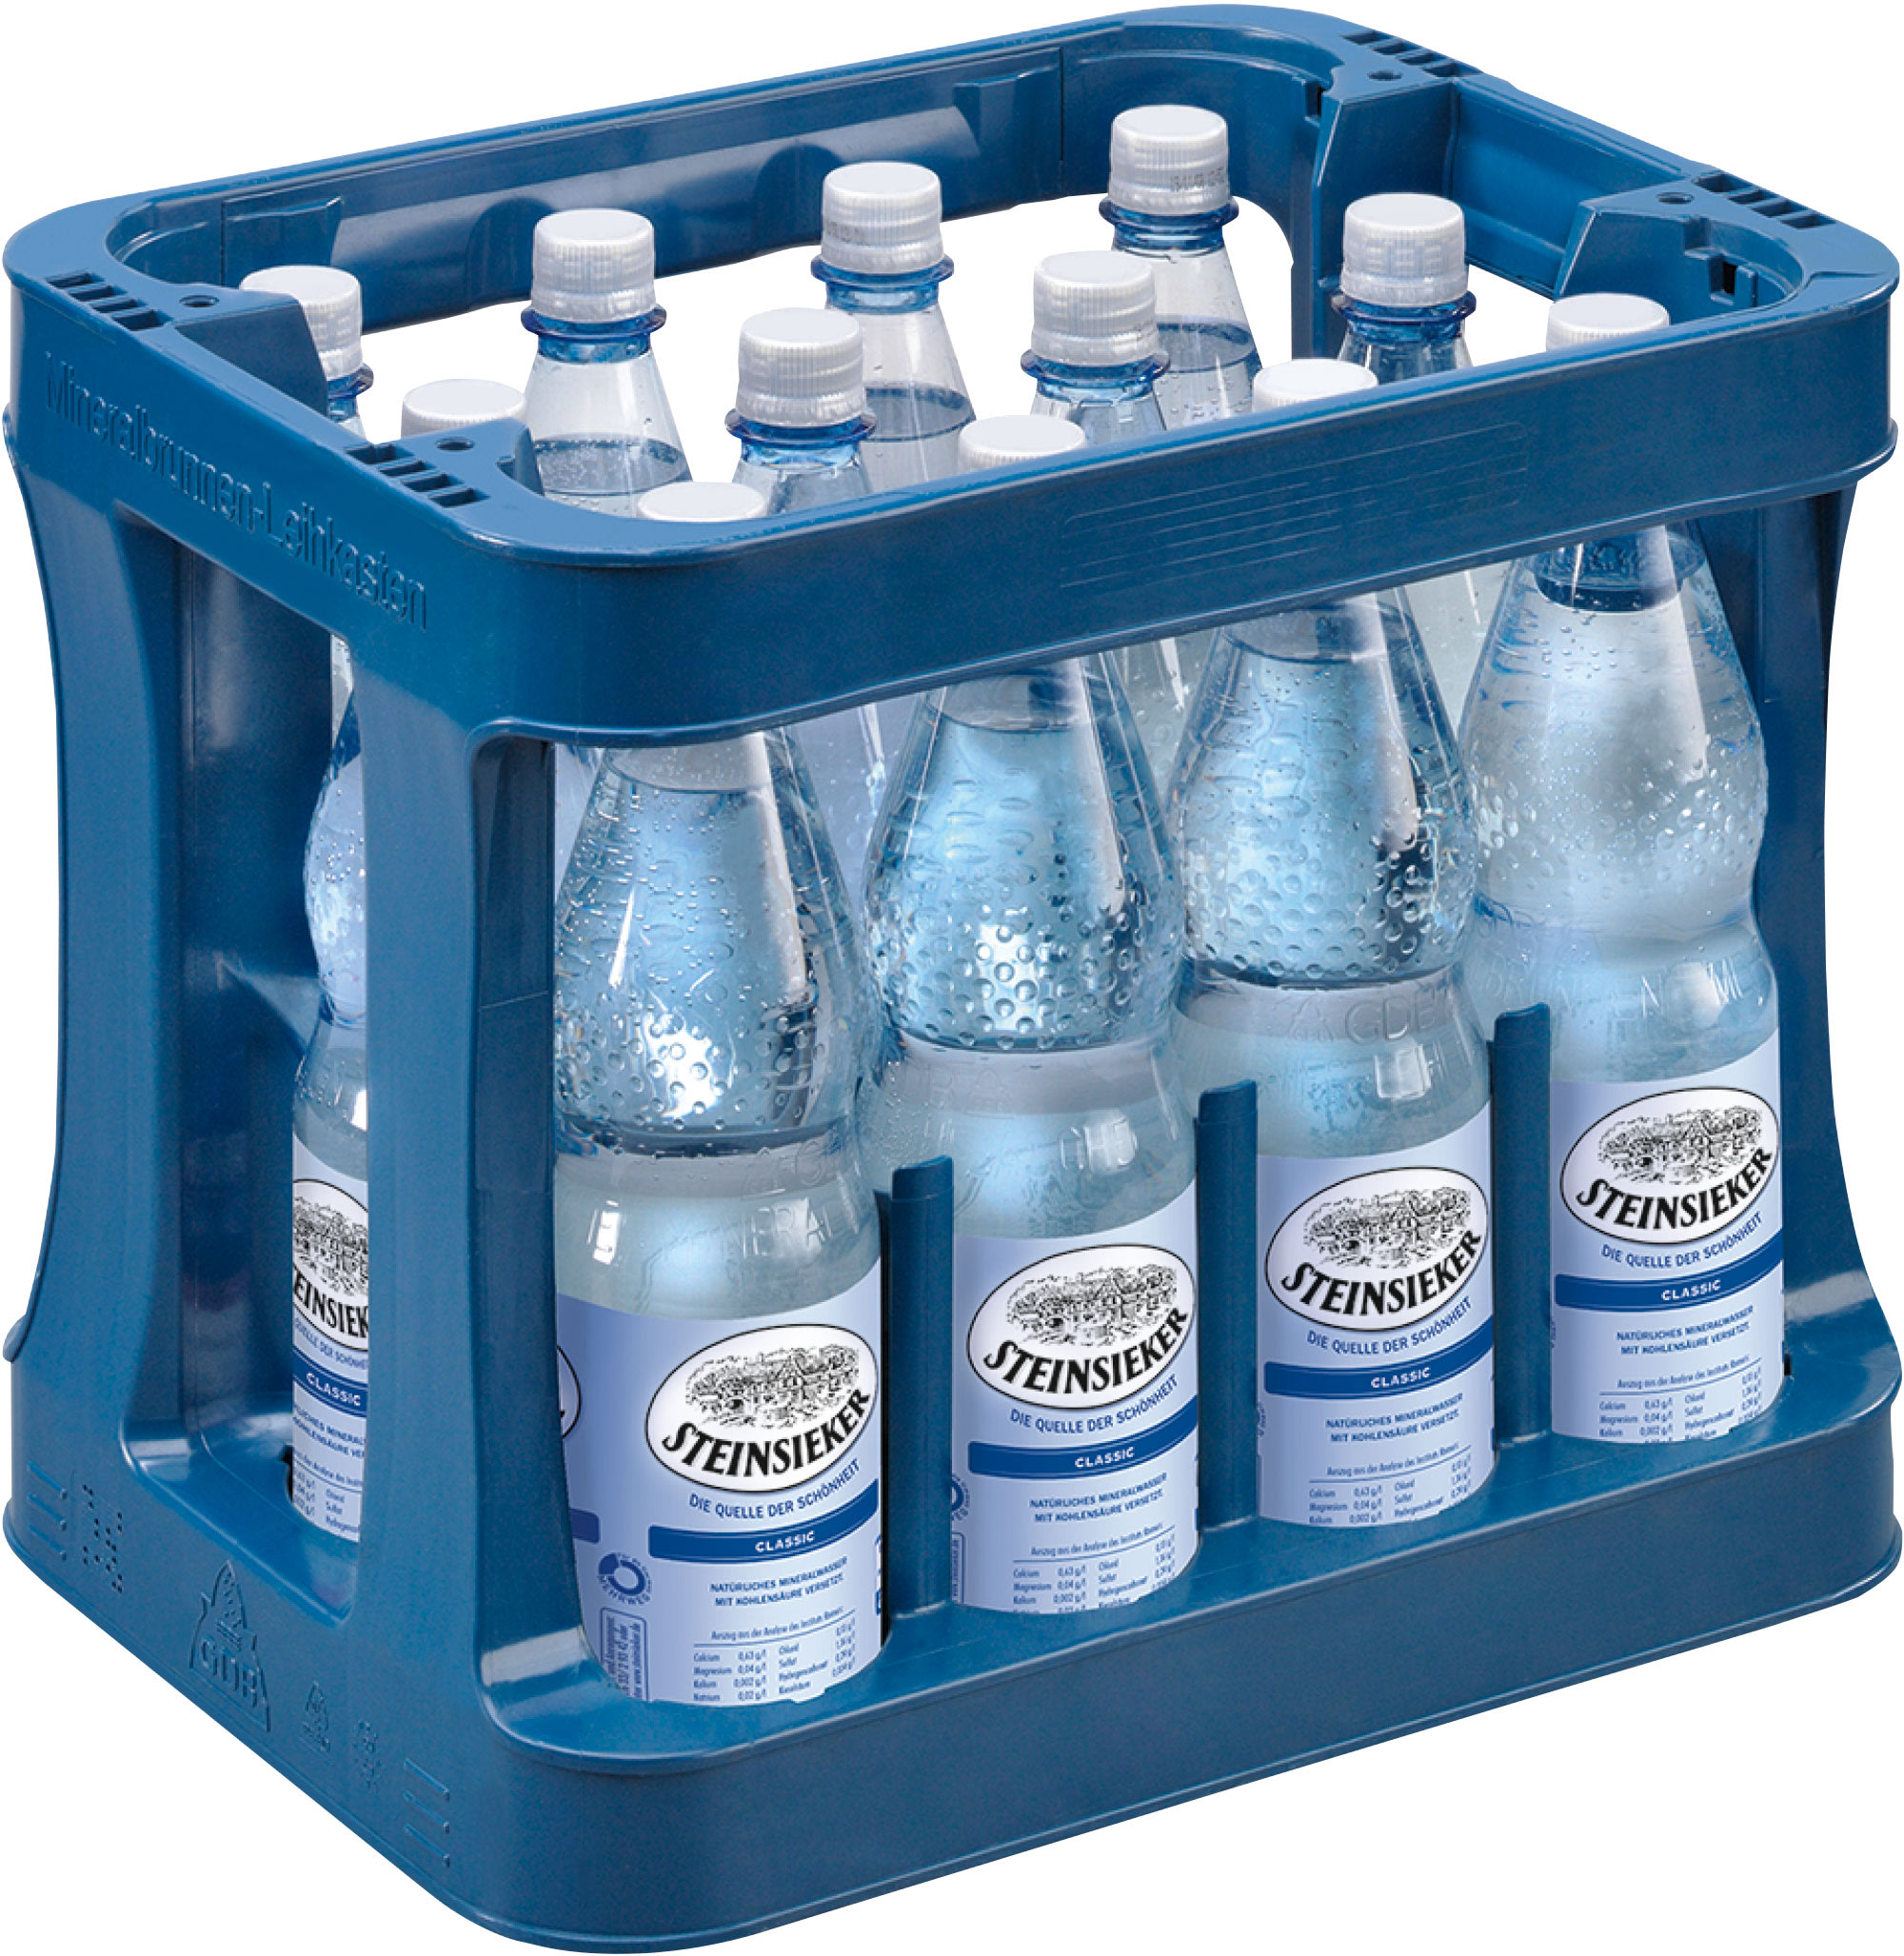 Steinsieker Mineralwasser Classic Kasten 12 x 1 l PET Mehrweg